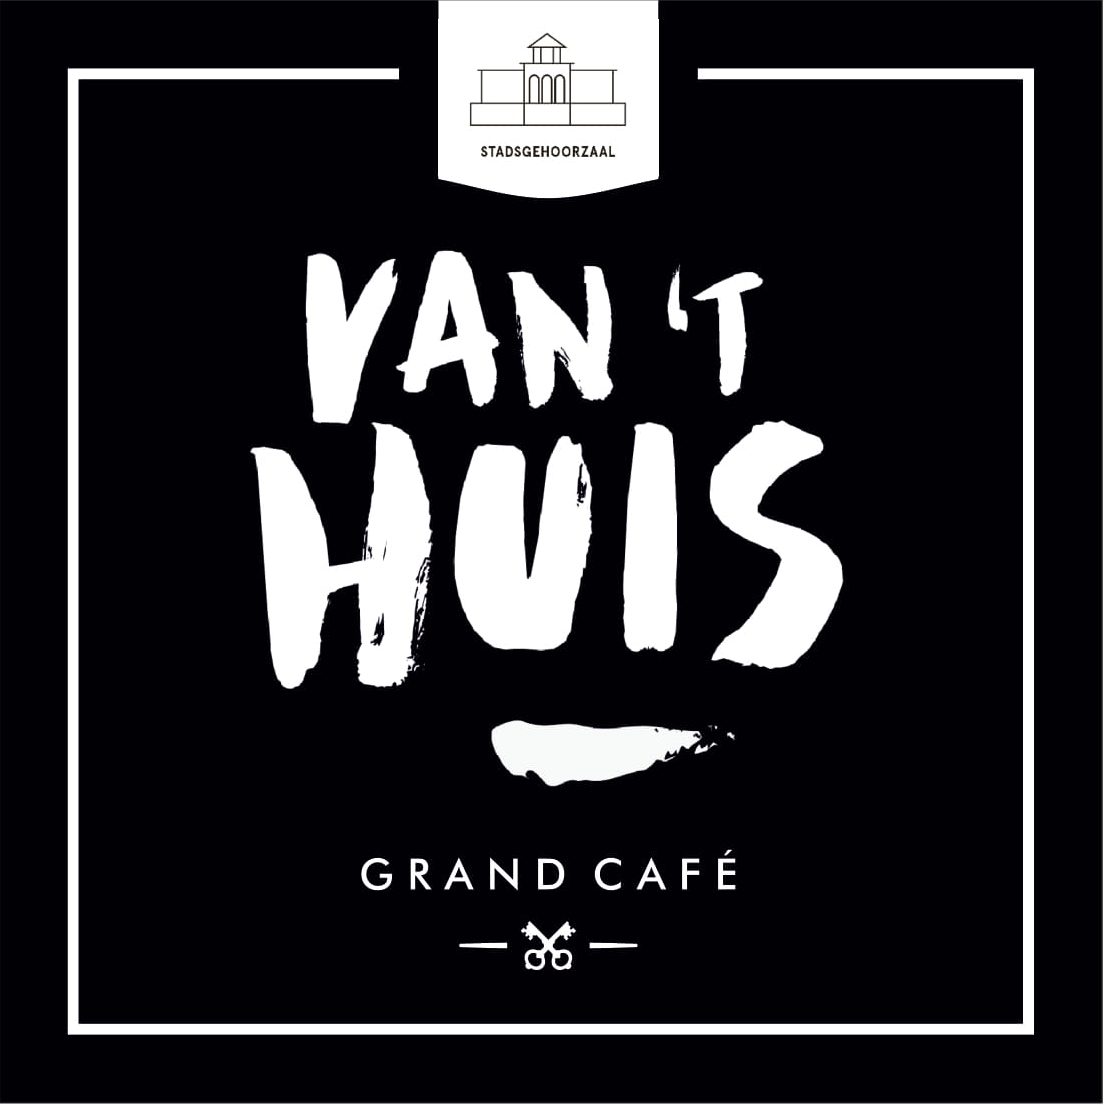 Grand Café Van 't Huis